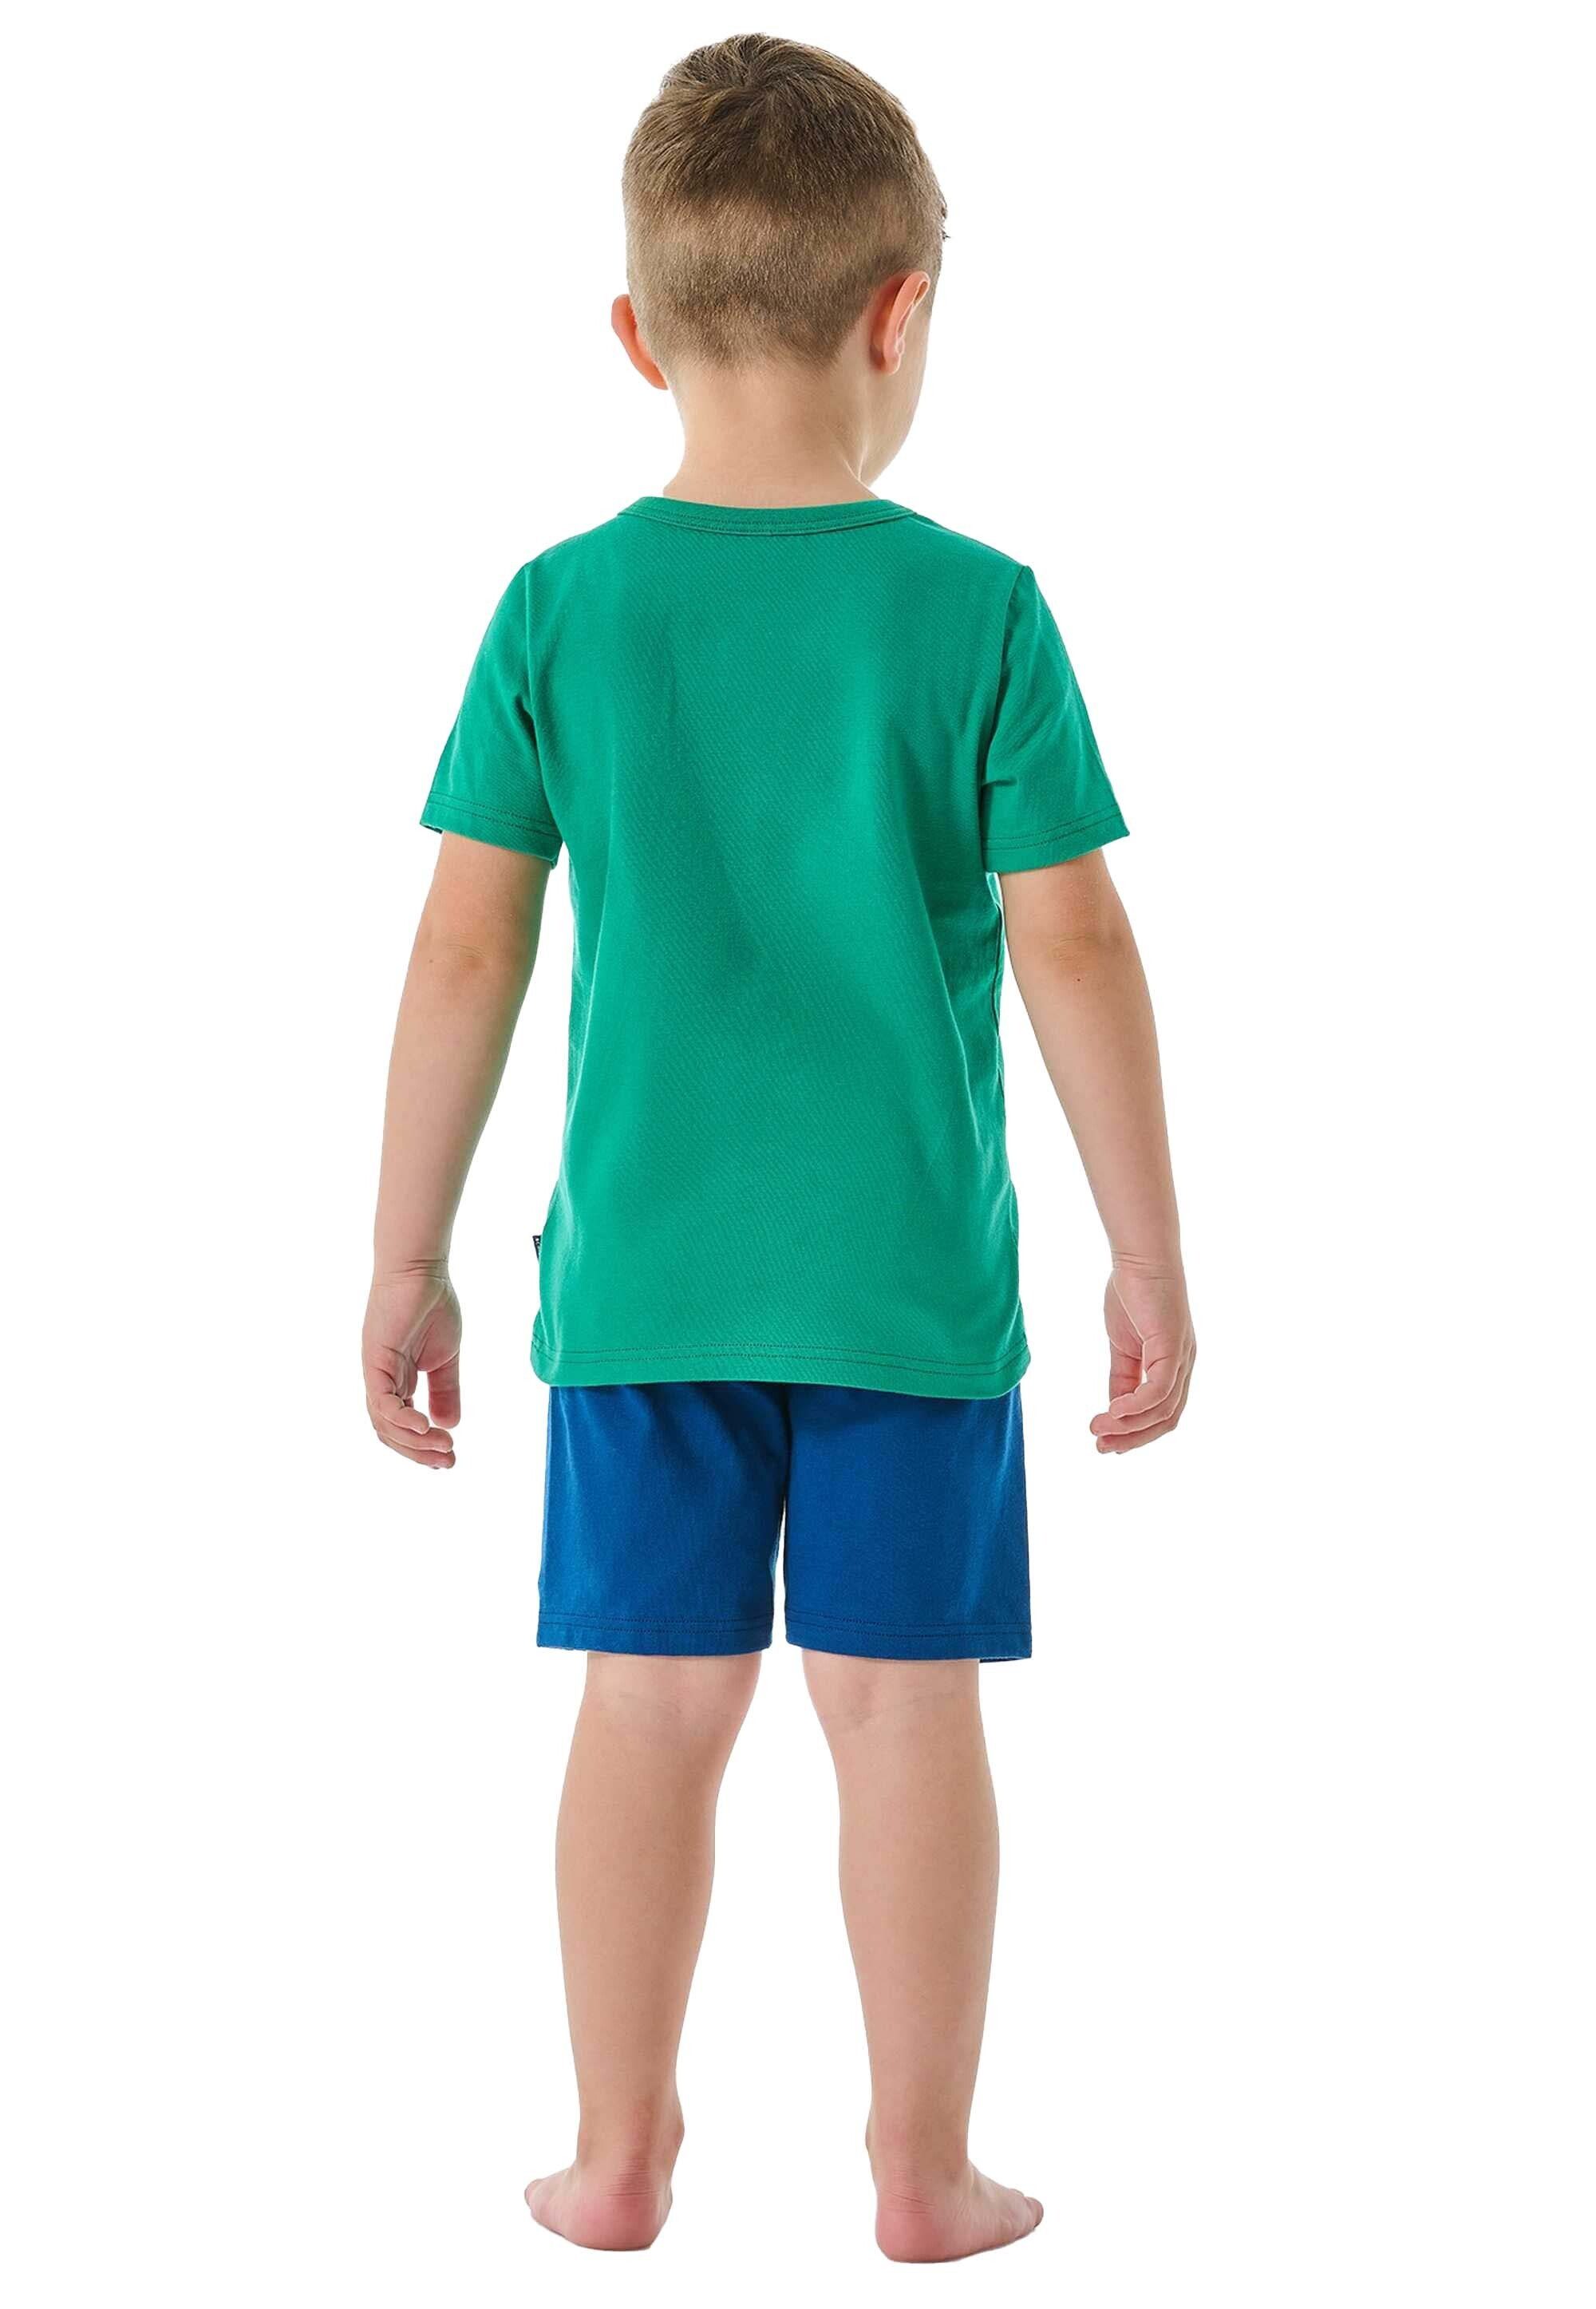 2-tlg. Schlafanzug Grün/Blau kurz, Kinder - Jungen Set Pyjama Schiesser